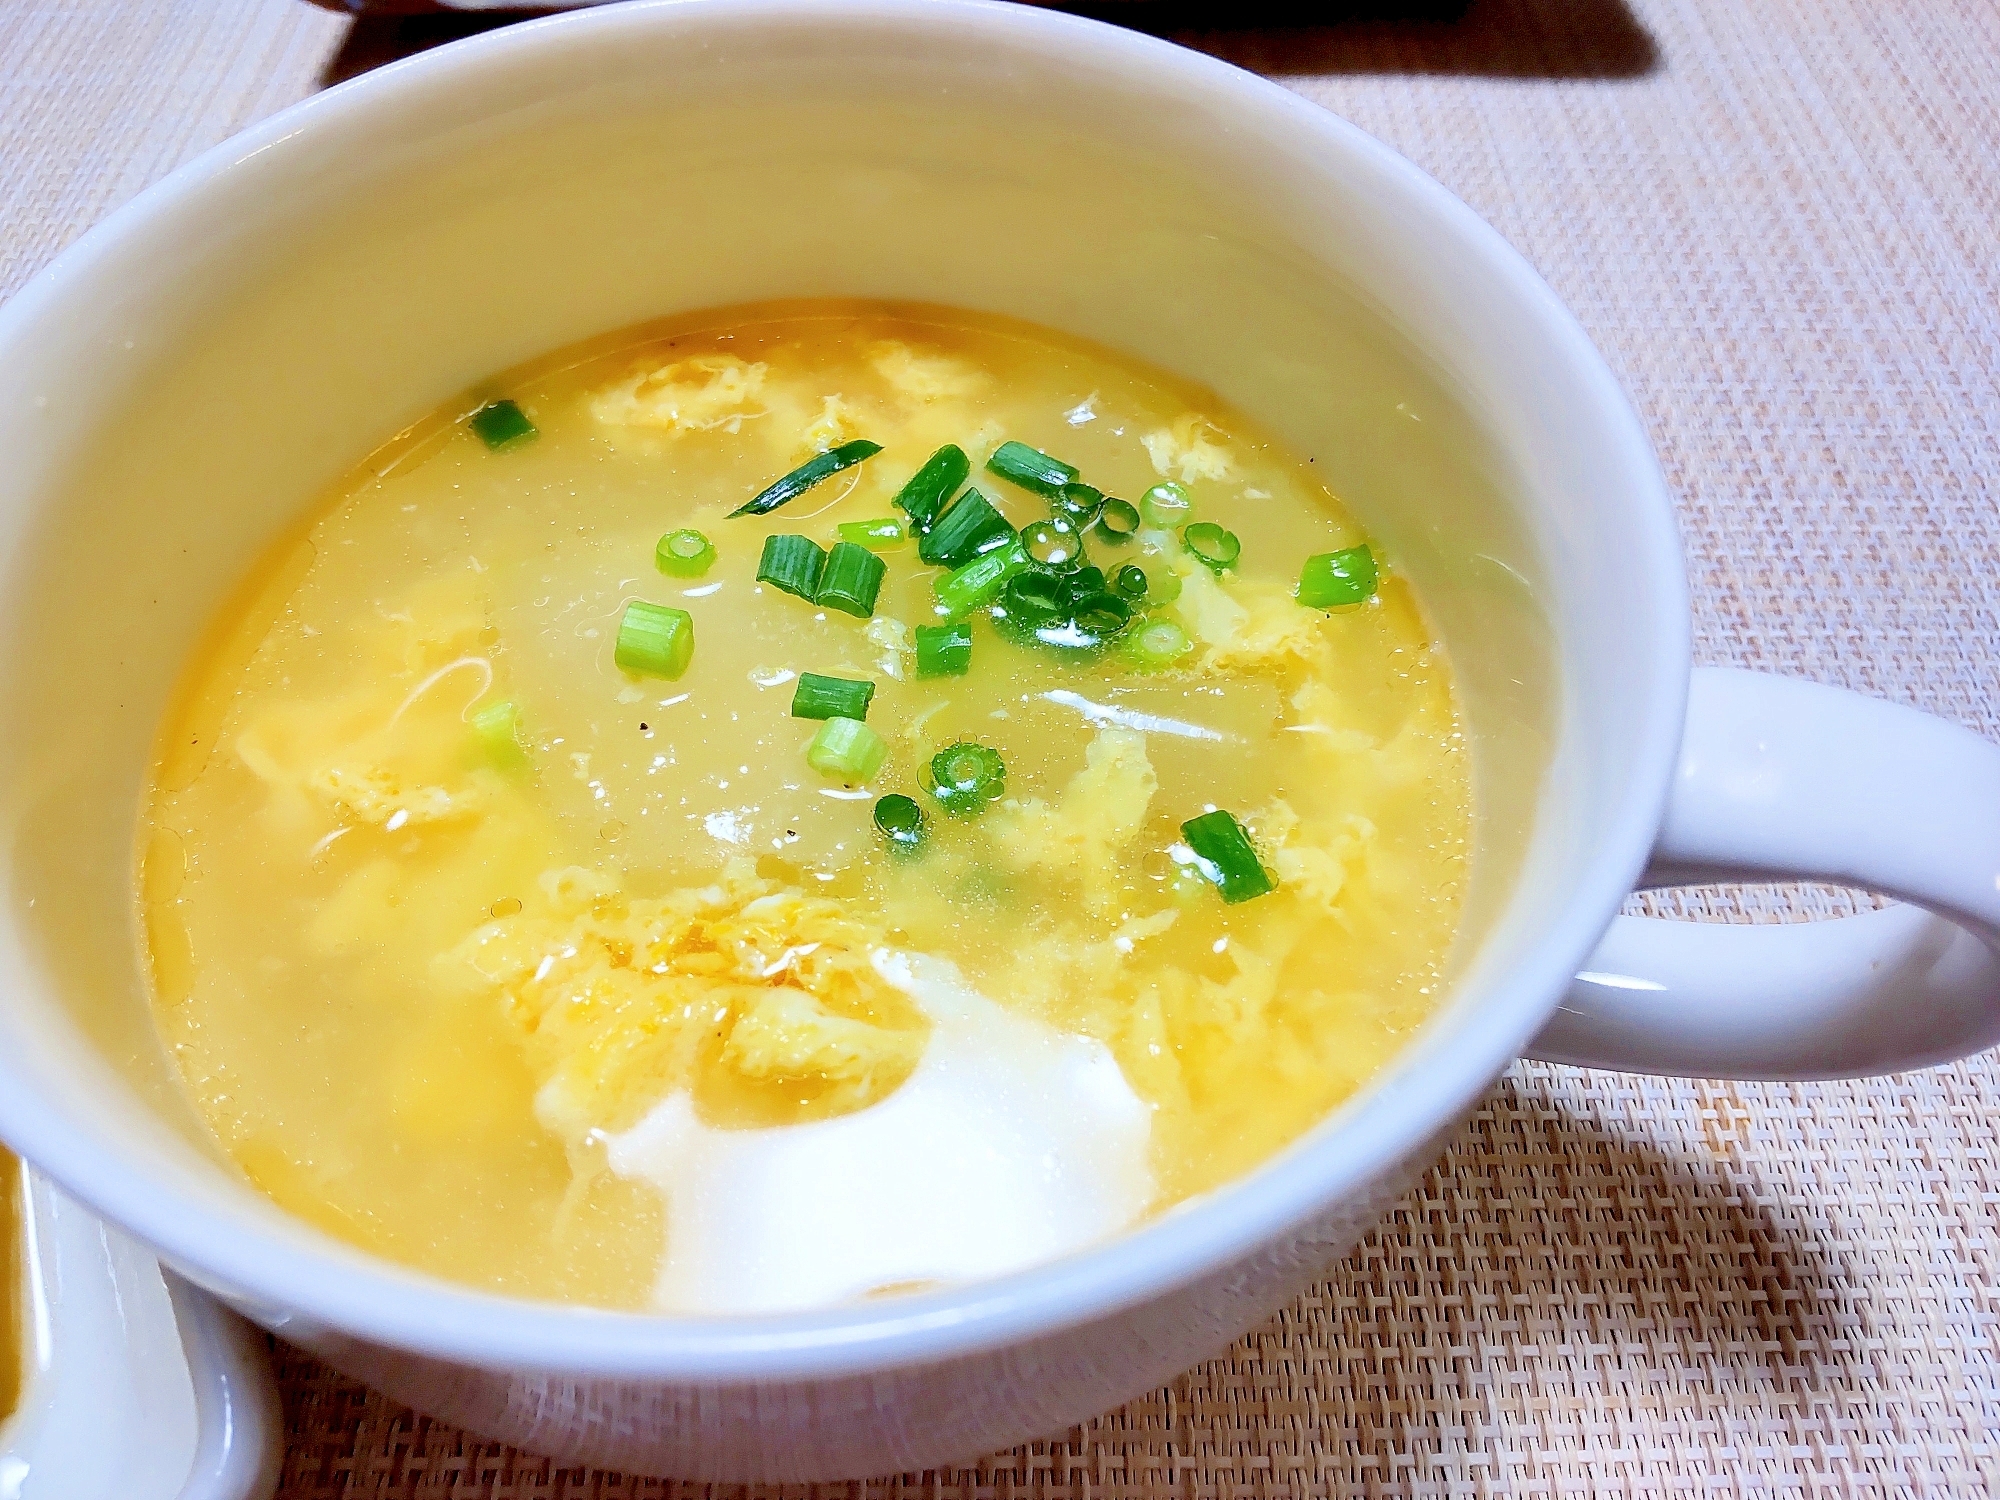 冬瓜の中華風スープ